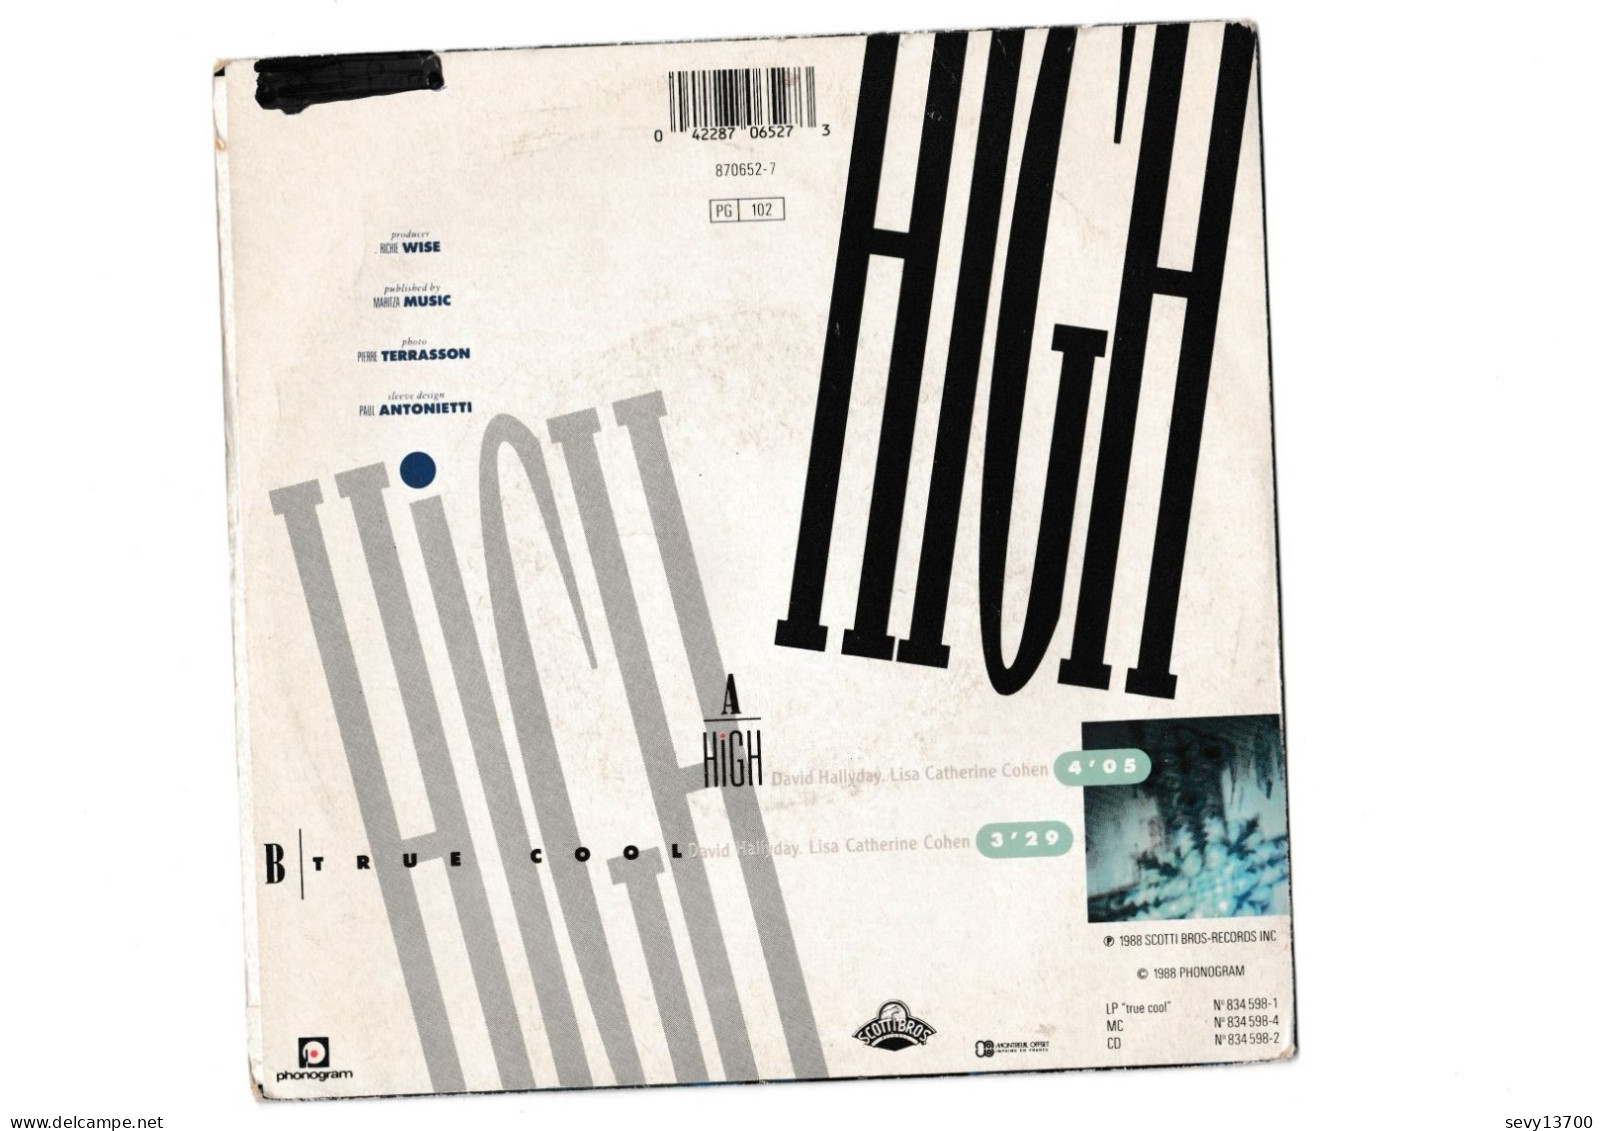 Vinyles 45 Tours David Hallyday - High - Année 1988 - Autres - Musique Française